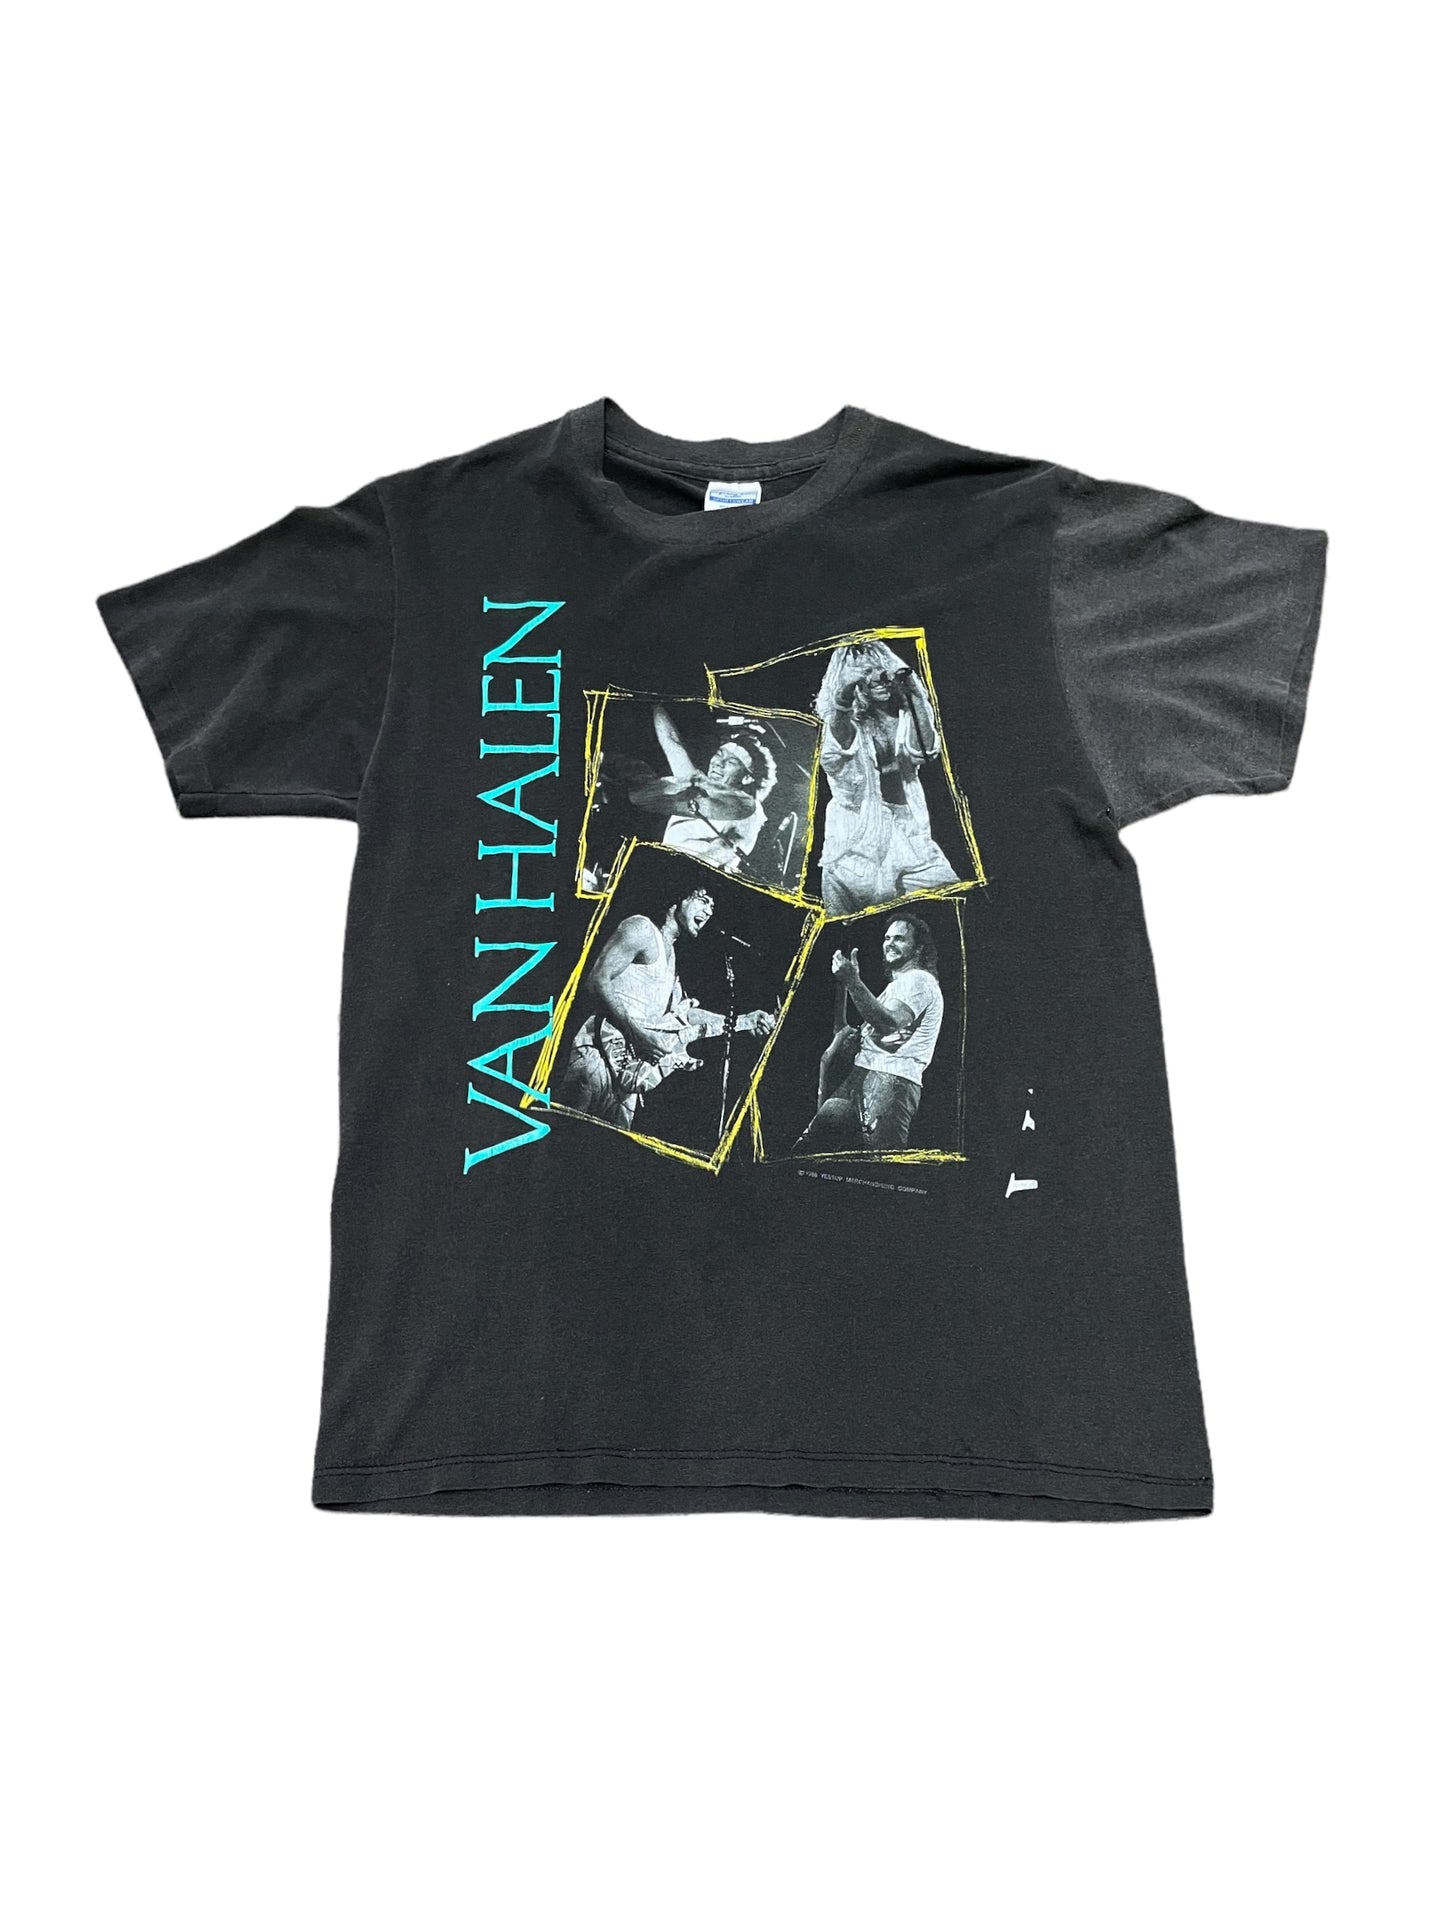 Vintage 1988 Van Halen Tour Band T Shirt Large